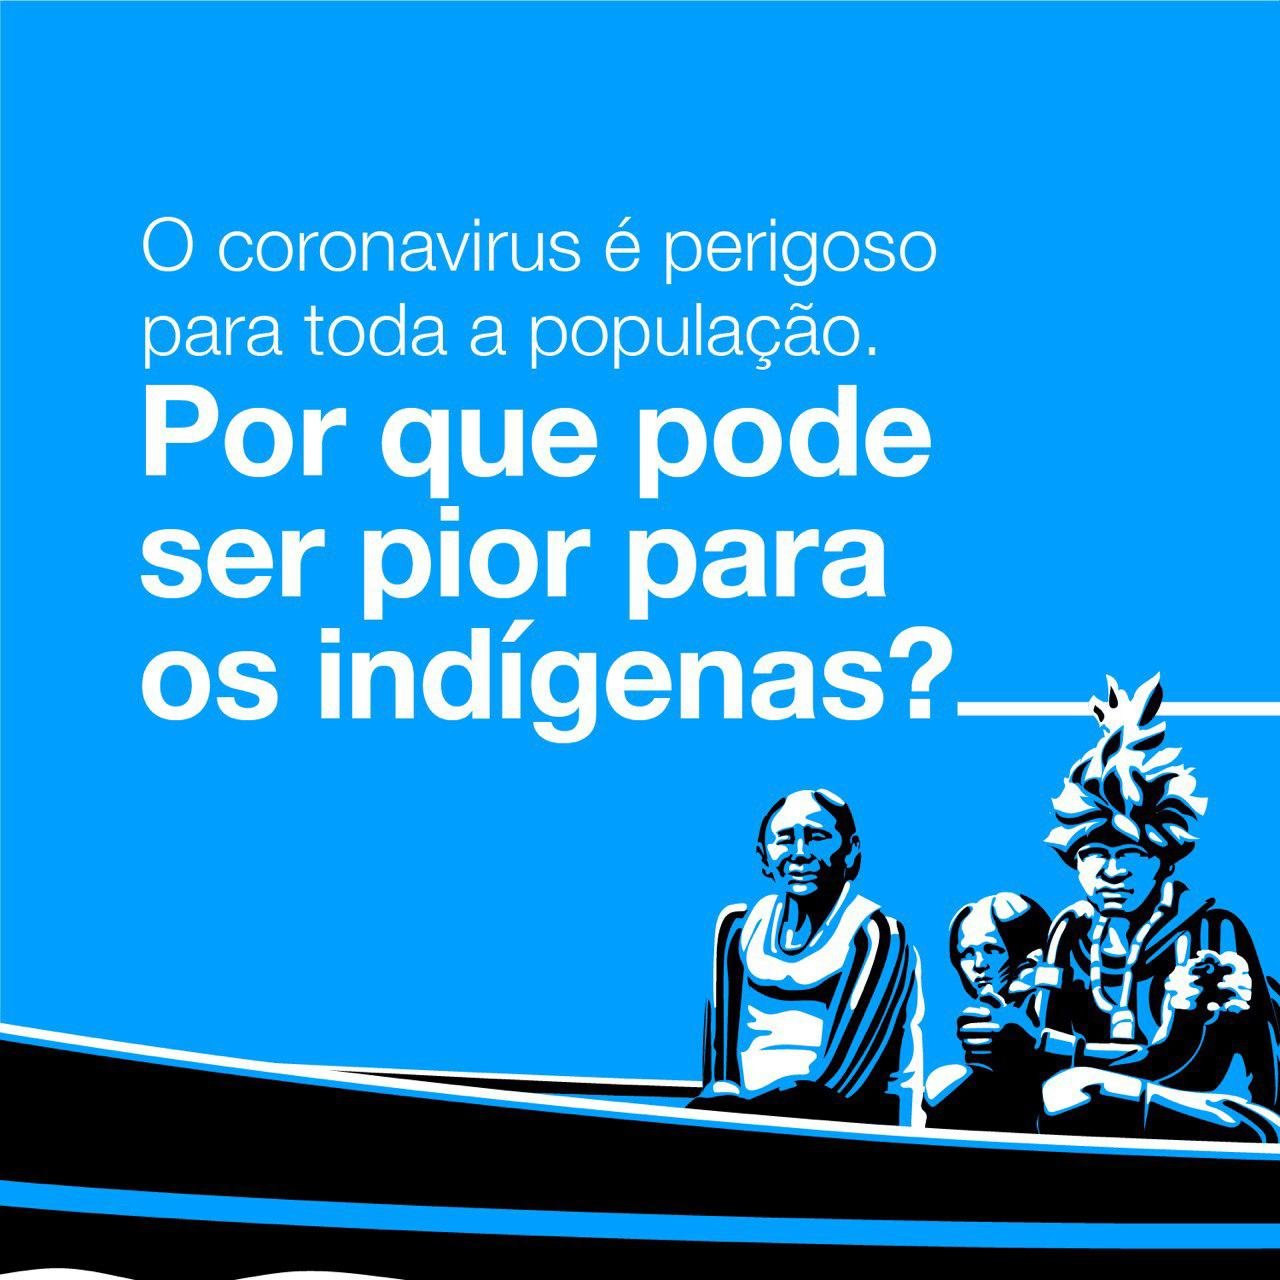 Publicidad de la APIB, la Confederación de Pueblos Indígenas de Brasil, sobre el coronavirus